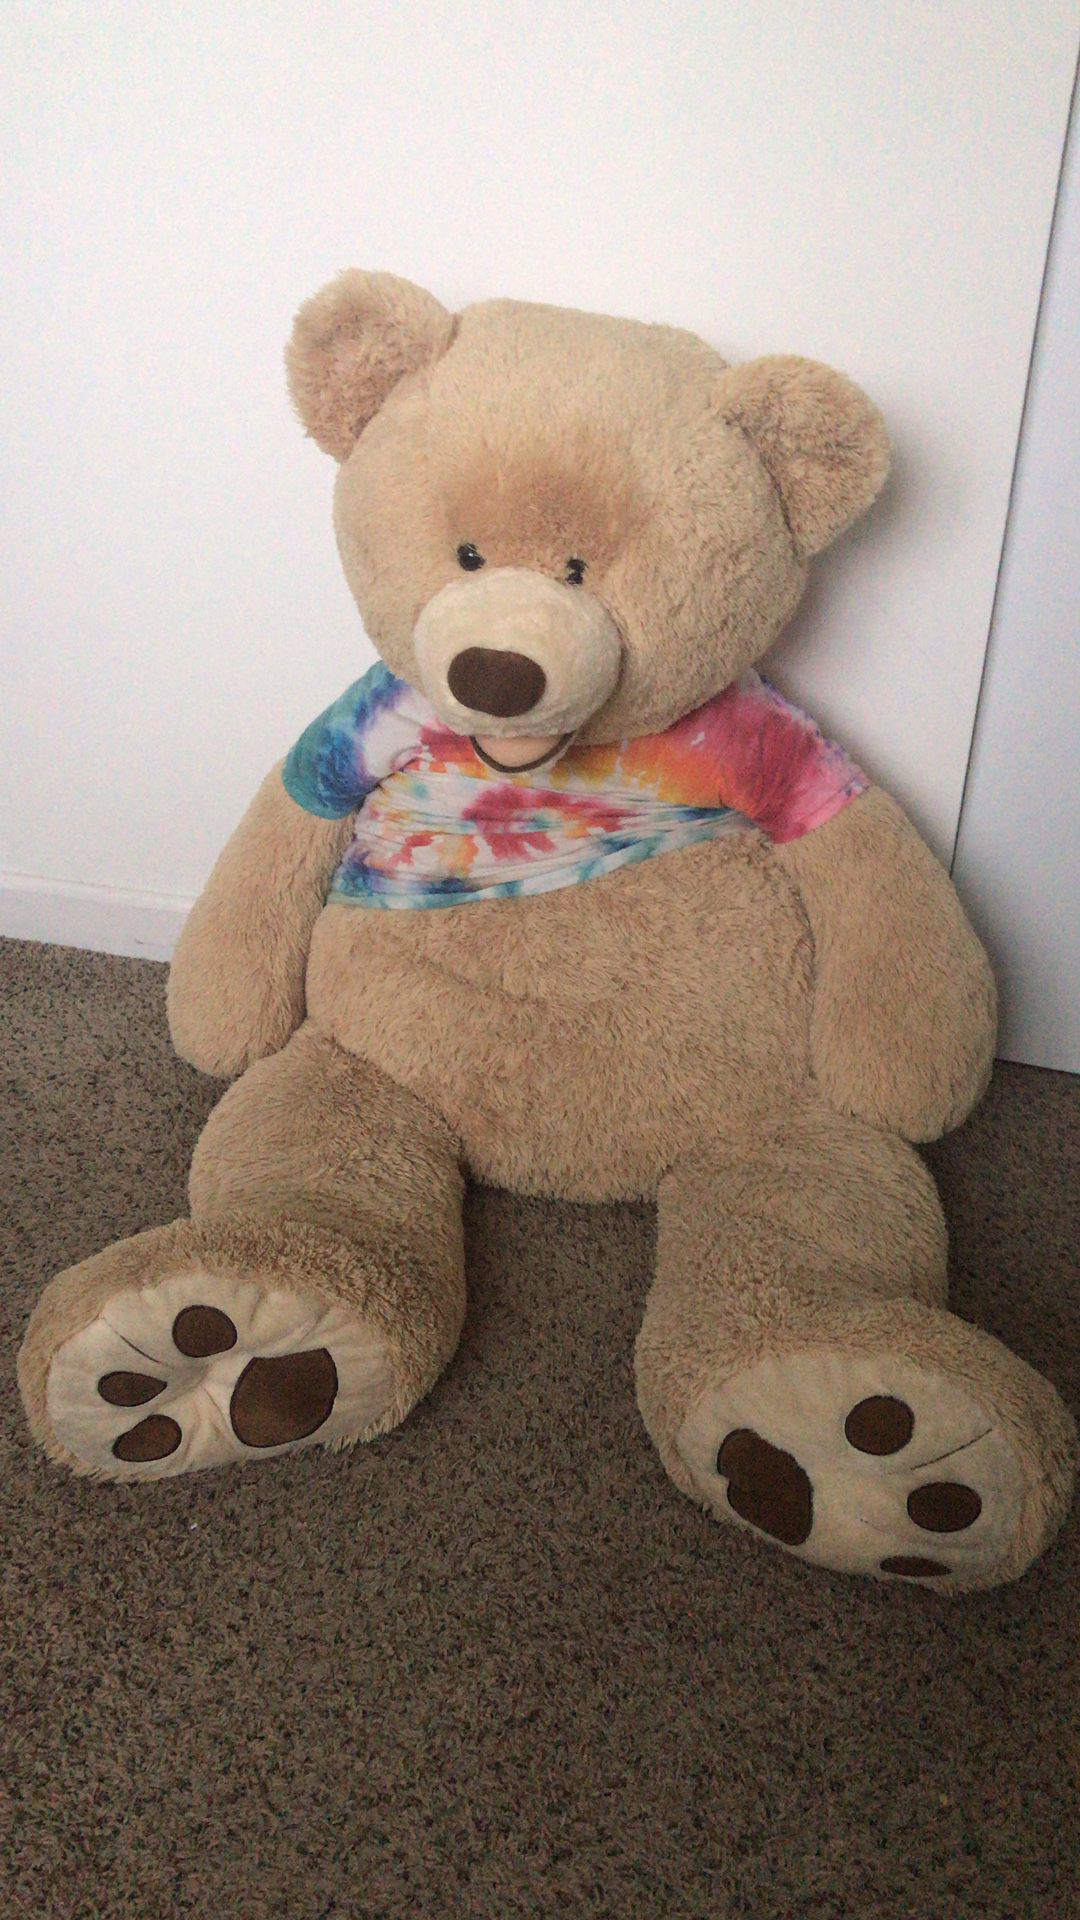 5ft Teddy Bear